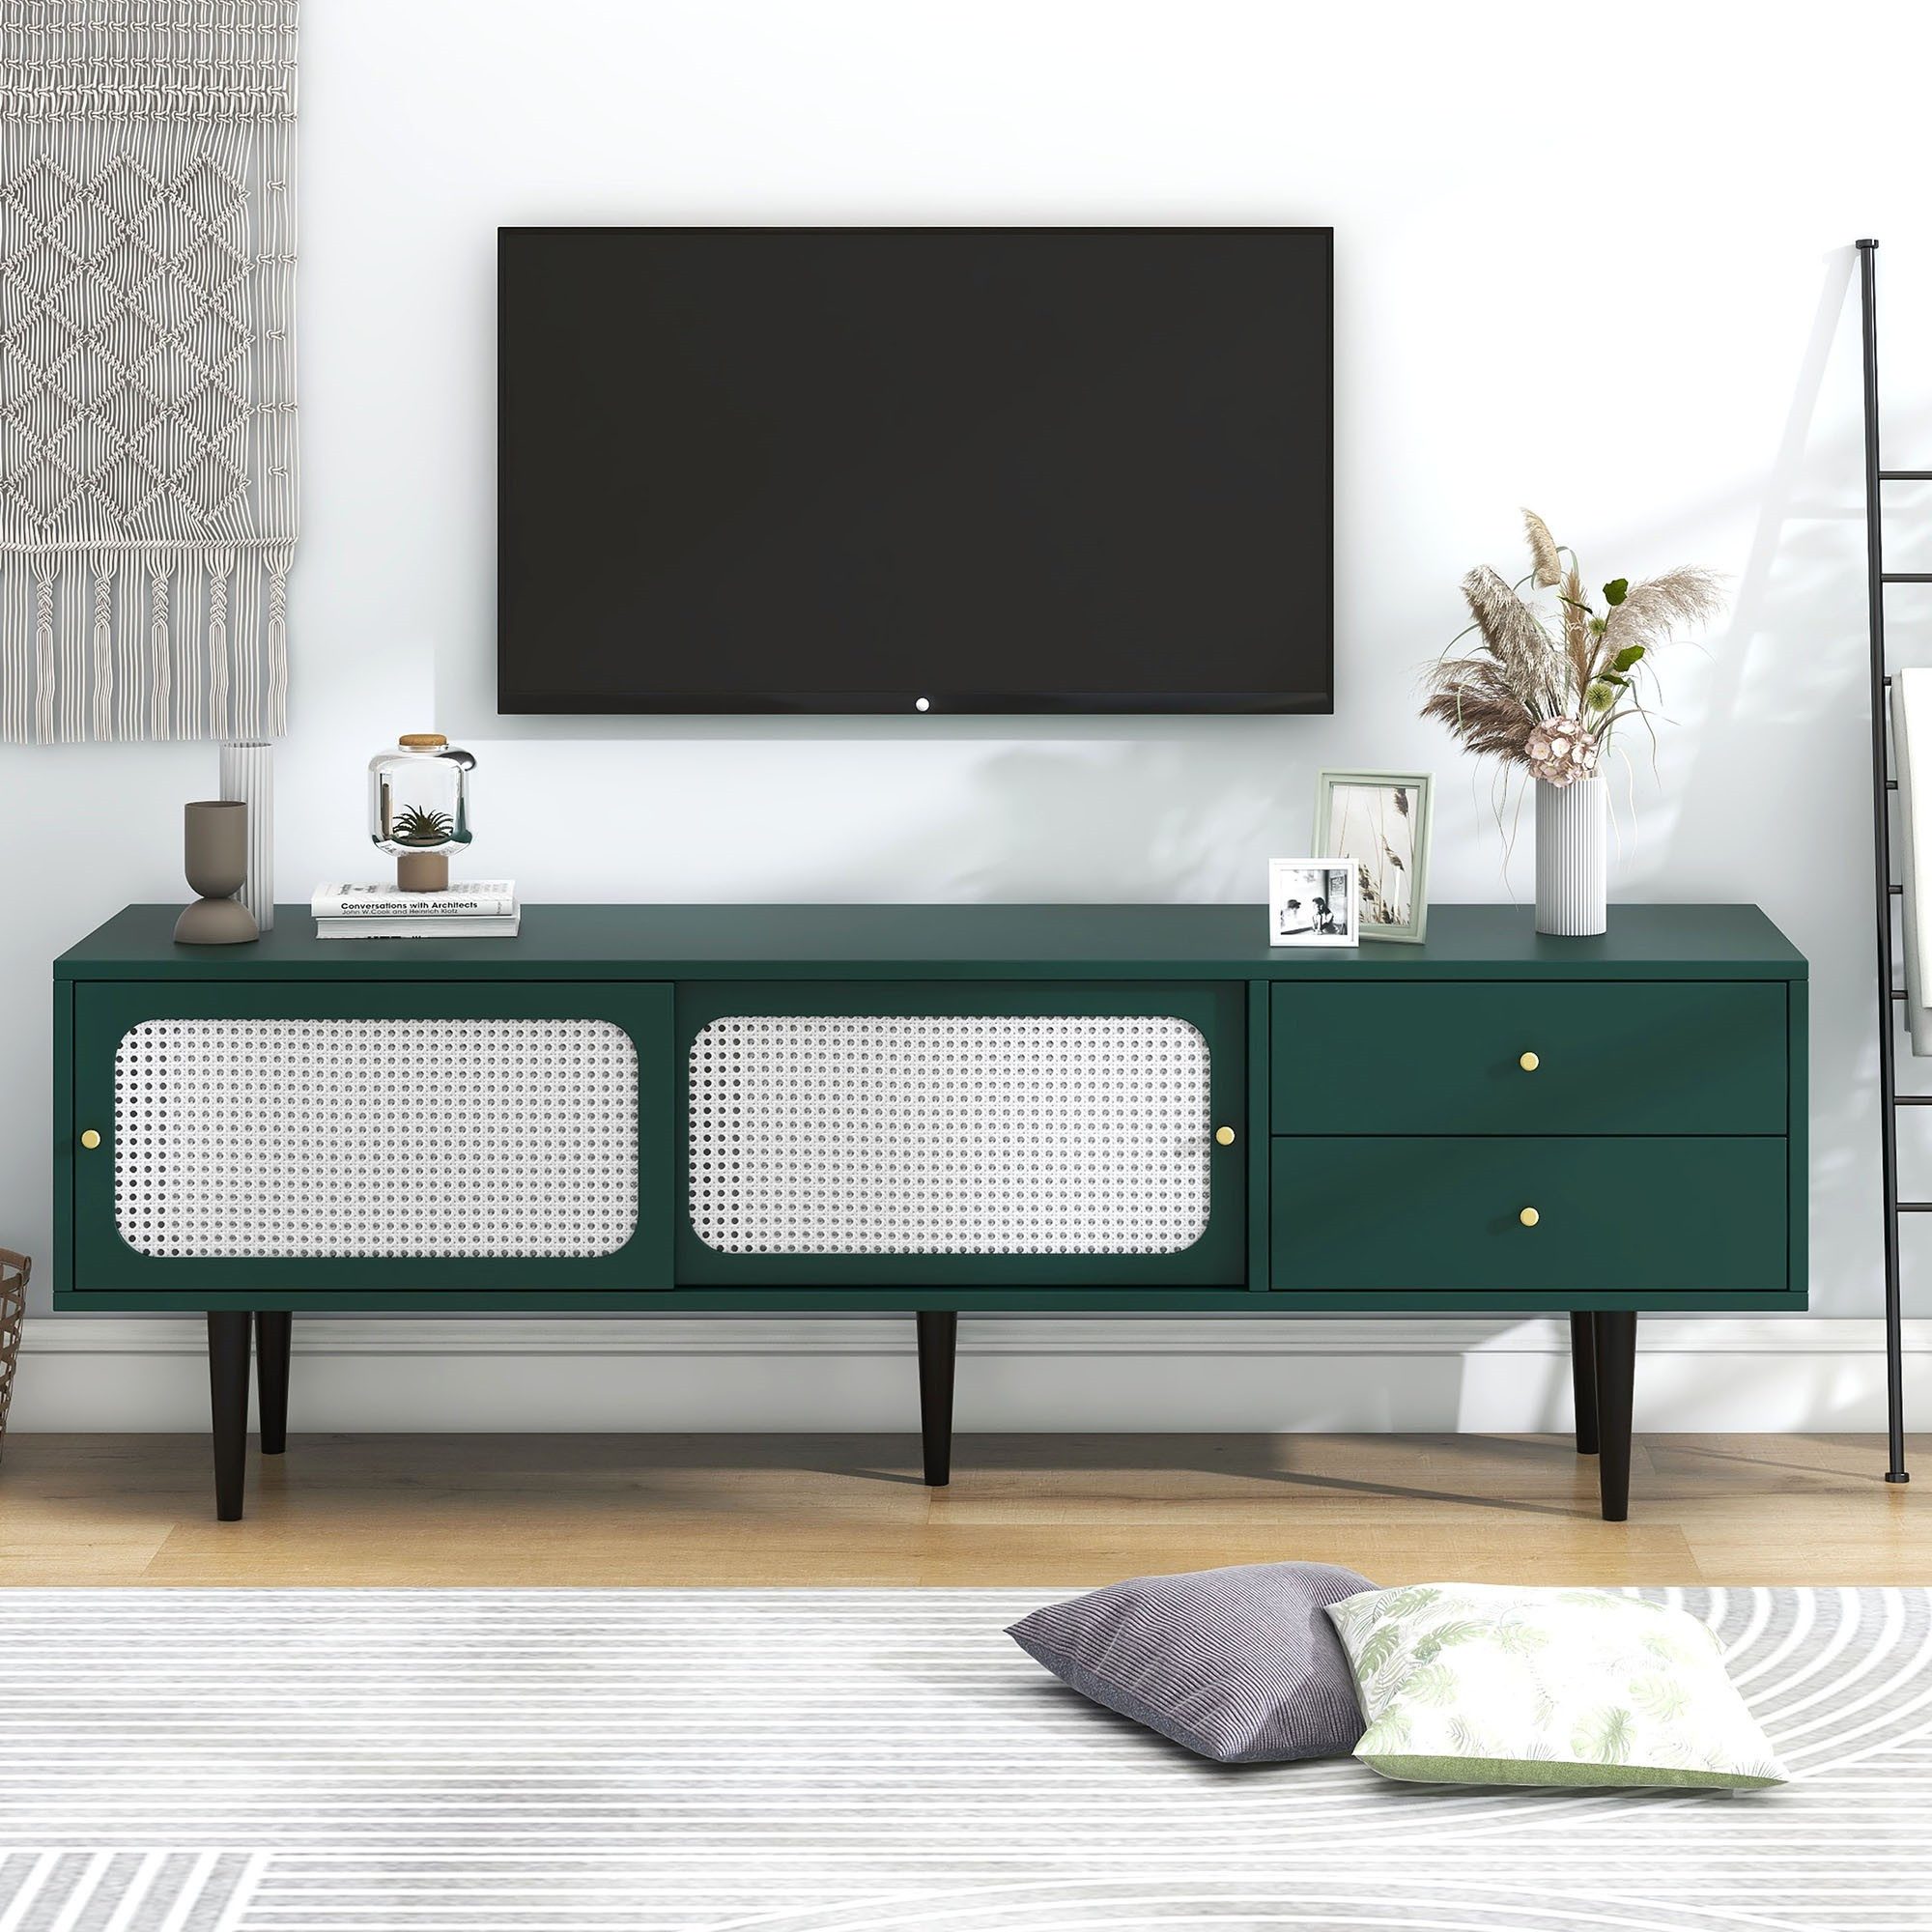 IDEASY TV-Schrank grün mit weißem Rattan, 2 Schubladen, (2 Rattan-Schiebetüren, 4 Fächer, höhenverstellbares mobiles Regal) 160*40*60 cm, Schrankboden 25 cm über dem Boden